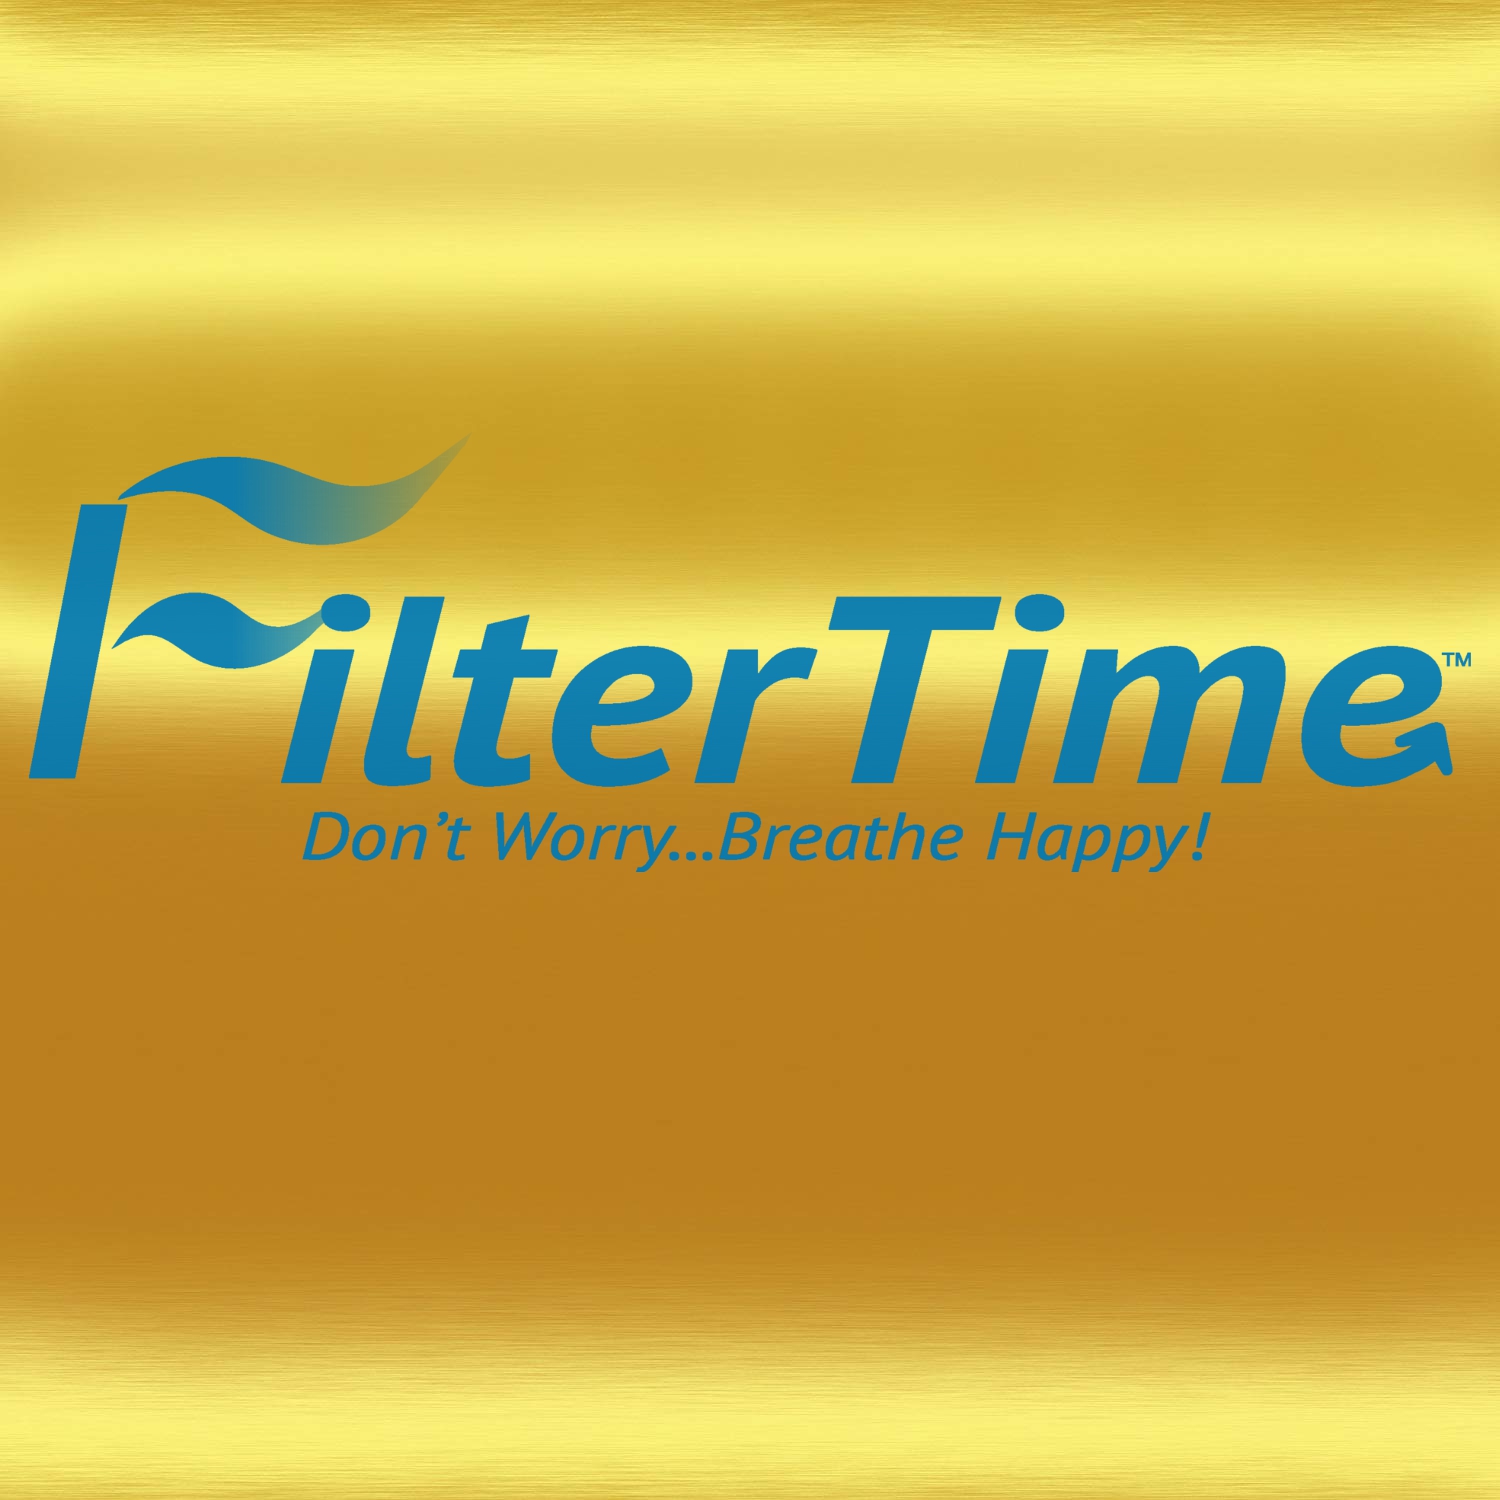 Filter time logos.jpg